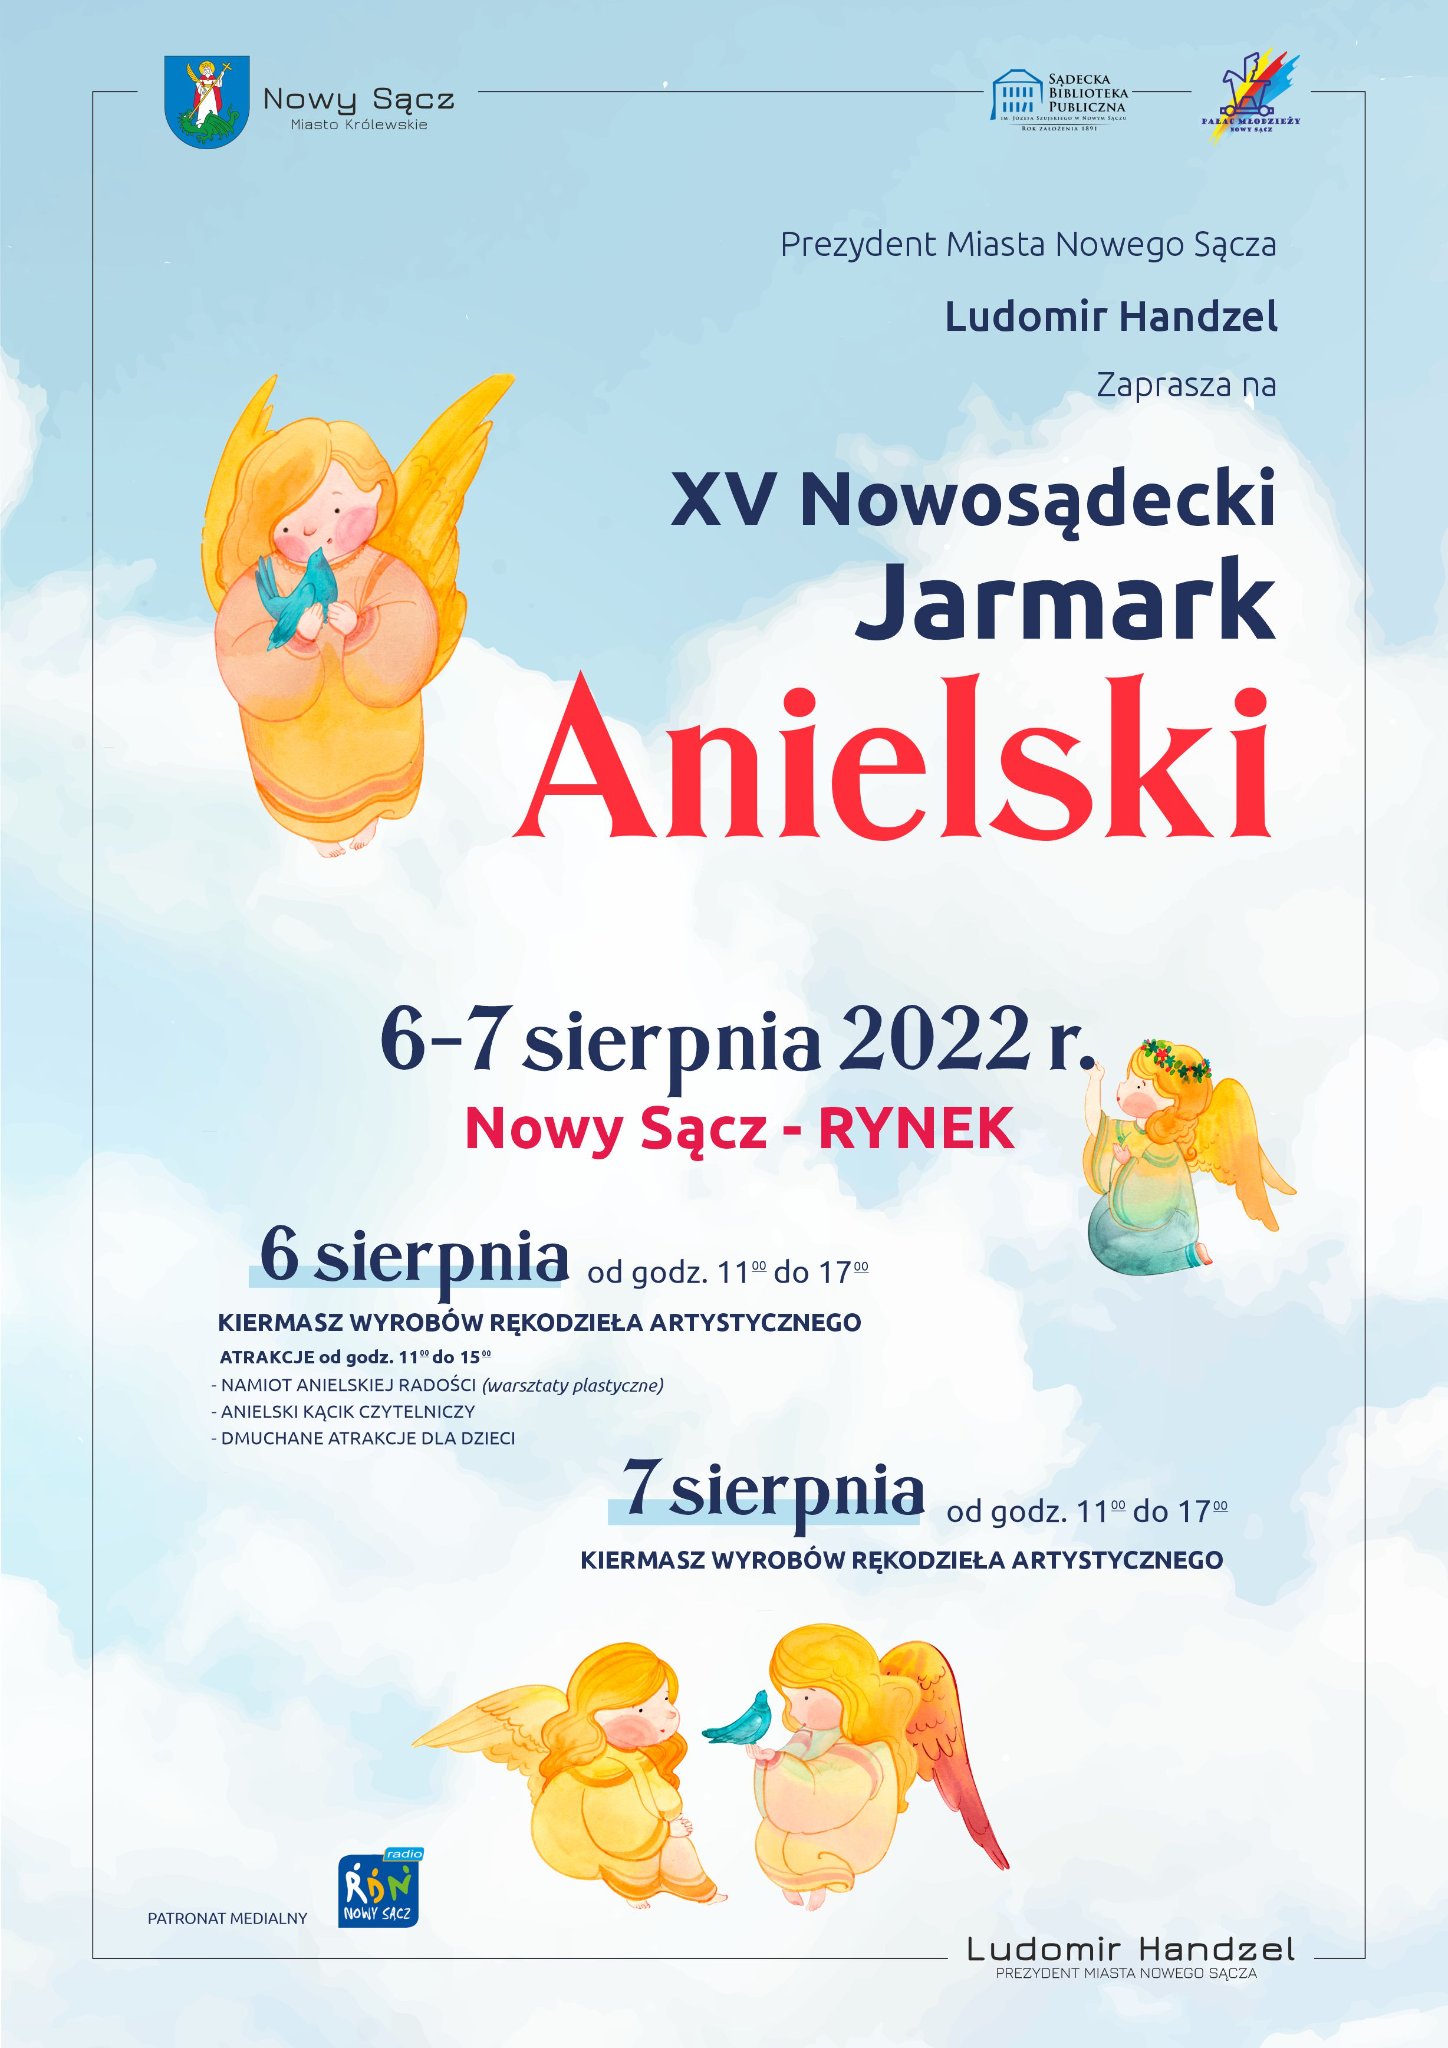 📣Zapraszam na XV Nowosądecki Jarmark Anielski, który odbędzie się w dniach: 6 – 7 sierpnia na płycie nowosądeckiego Rynku.📣